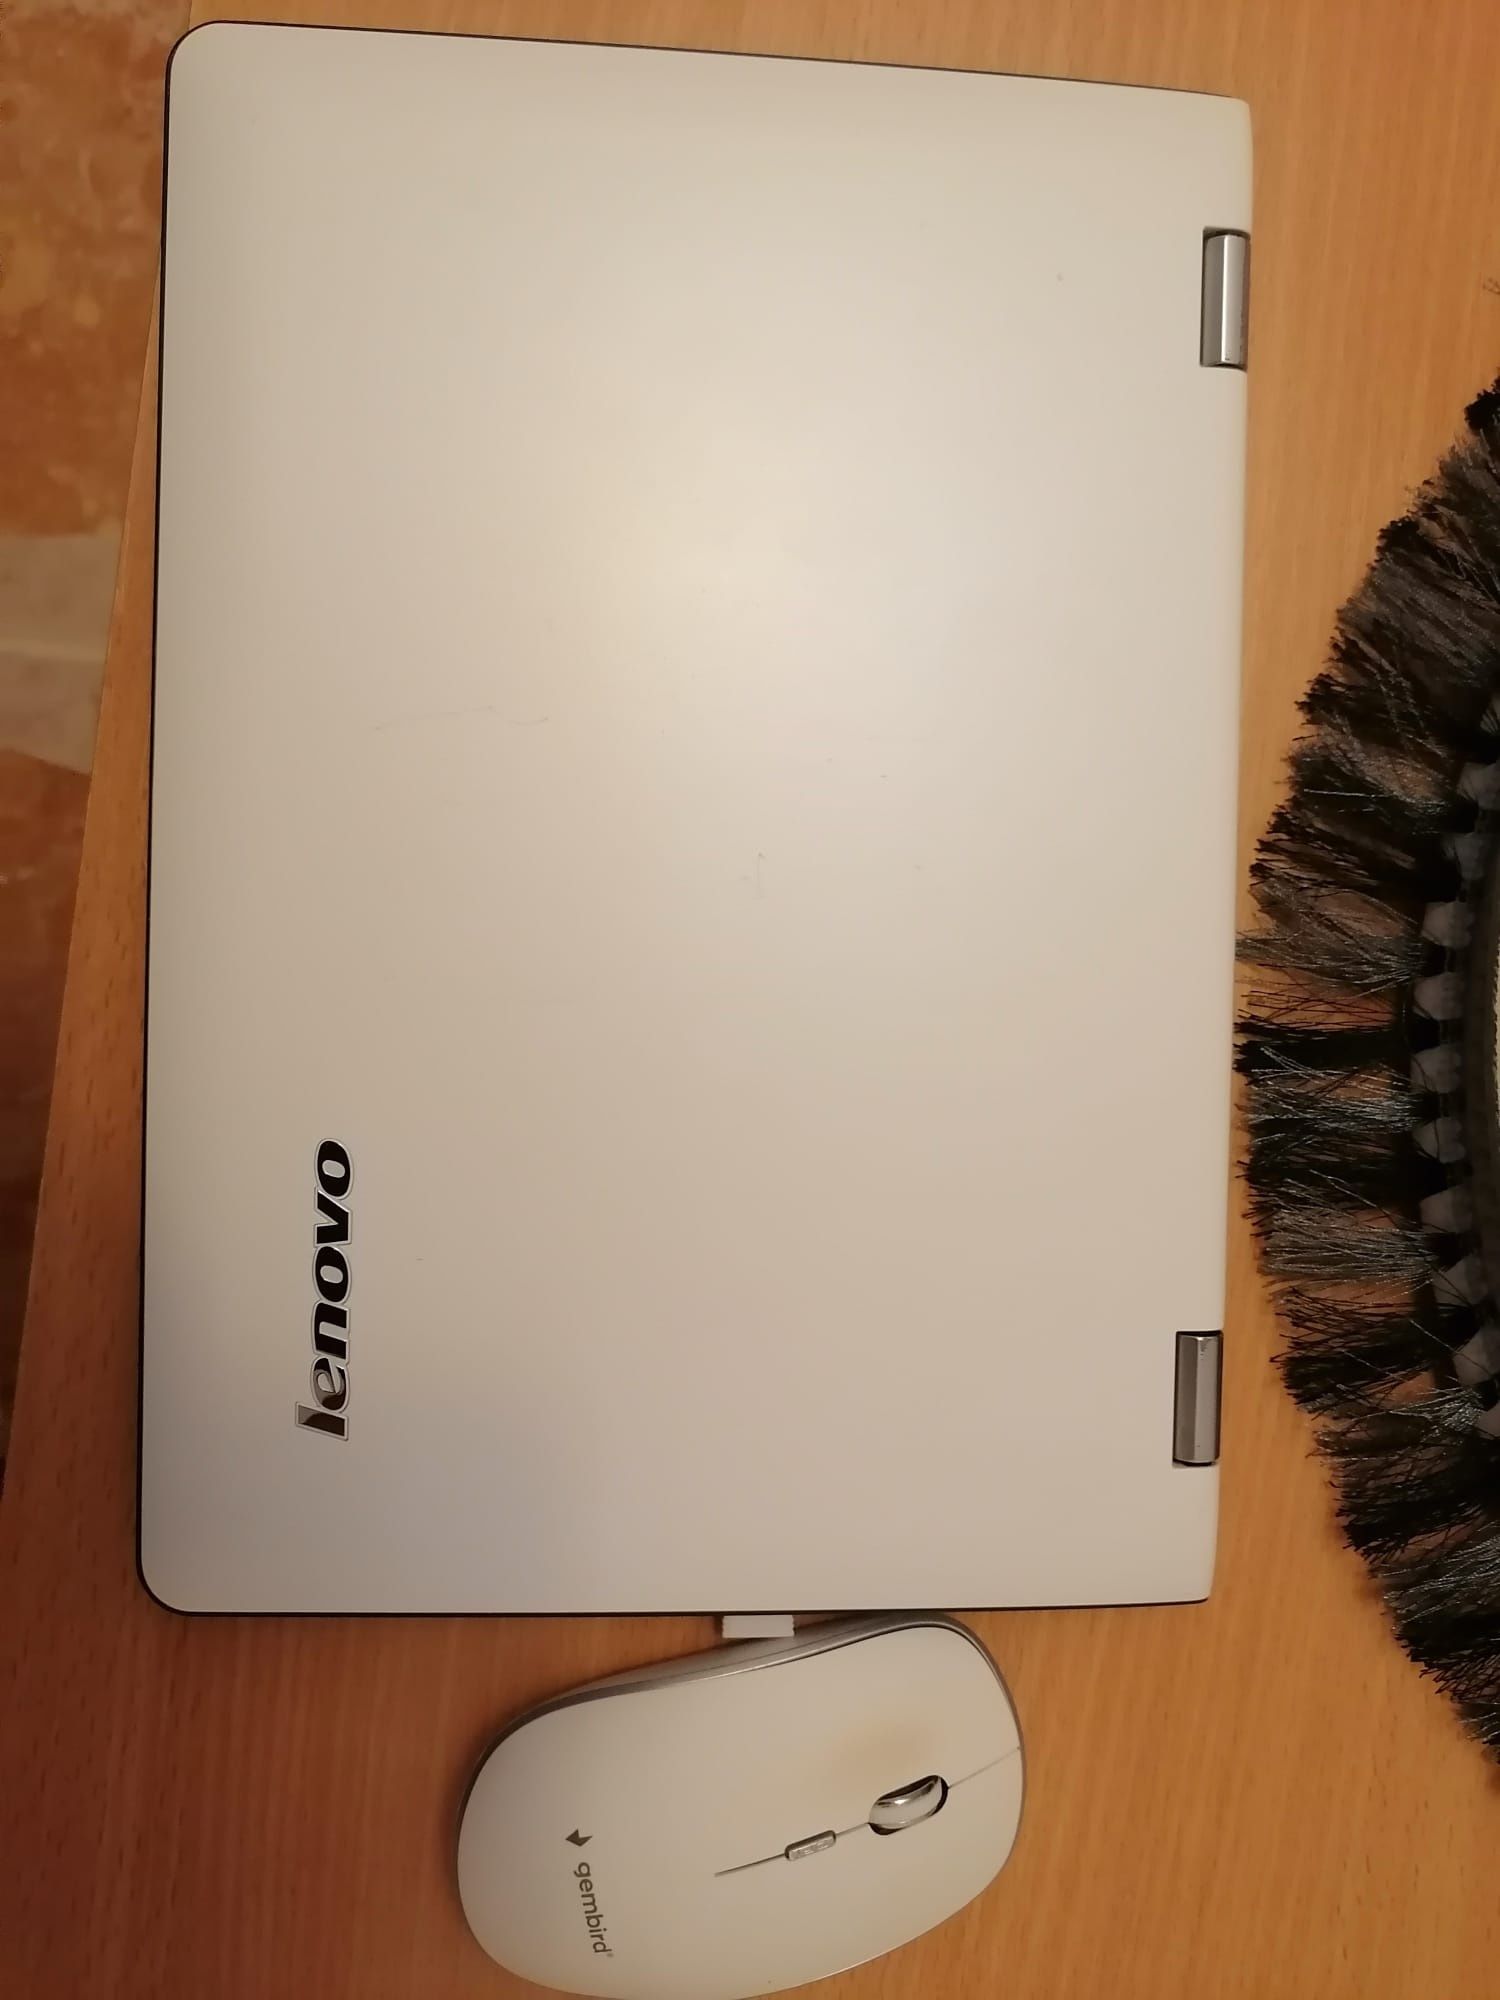 Laptop Lenovo yoga 11.9 inch touchscreen